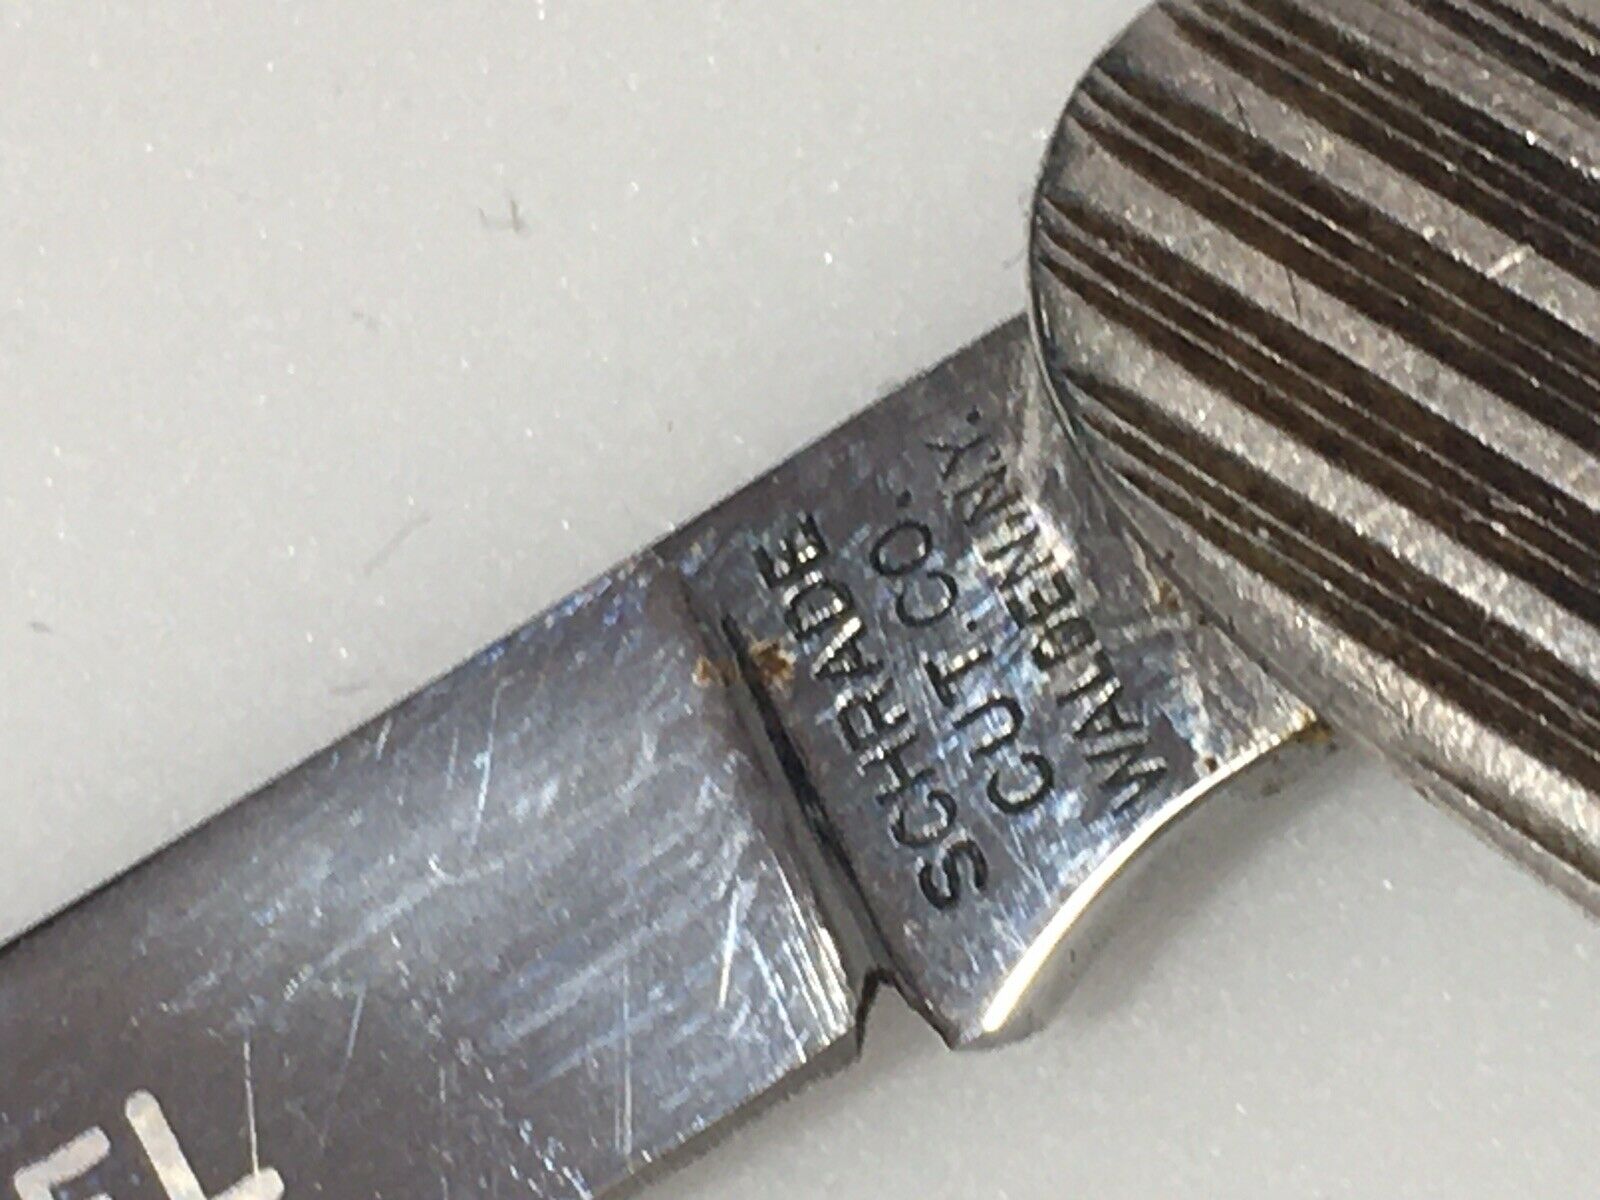 Vintage Schrade 2 blade sterling silver Art Deco pocket knife Walden NY c 1950